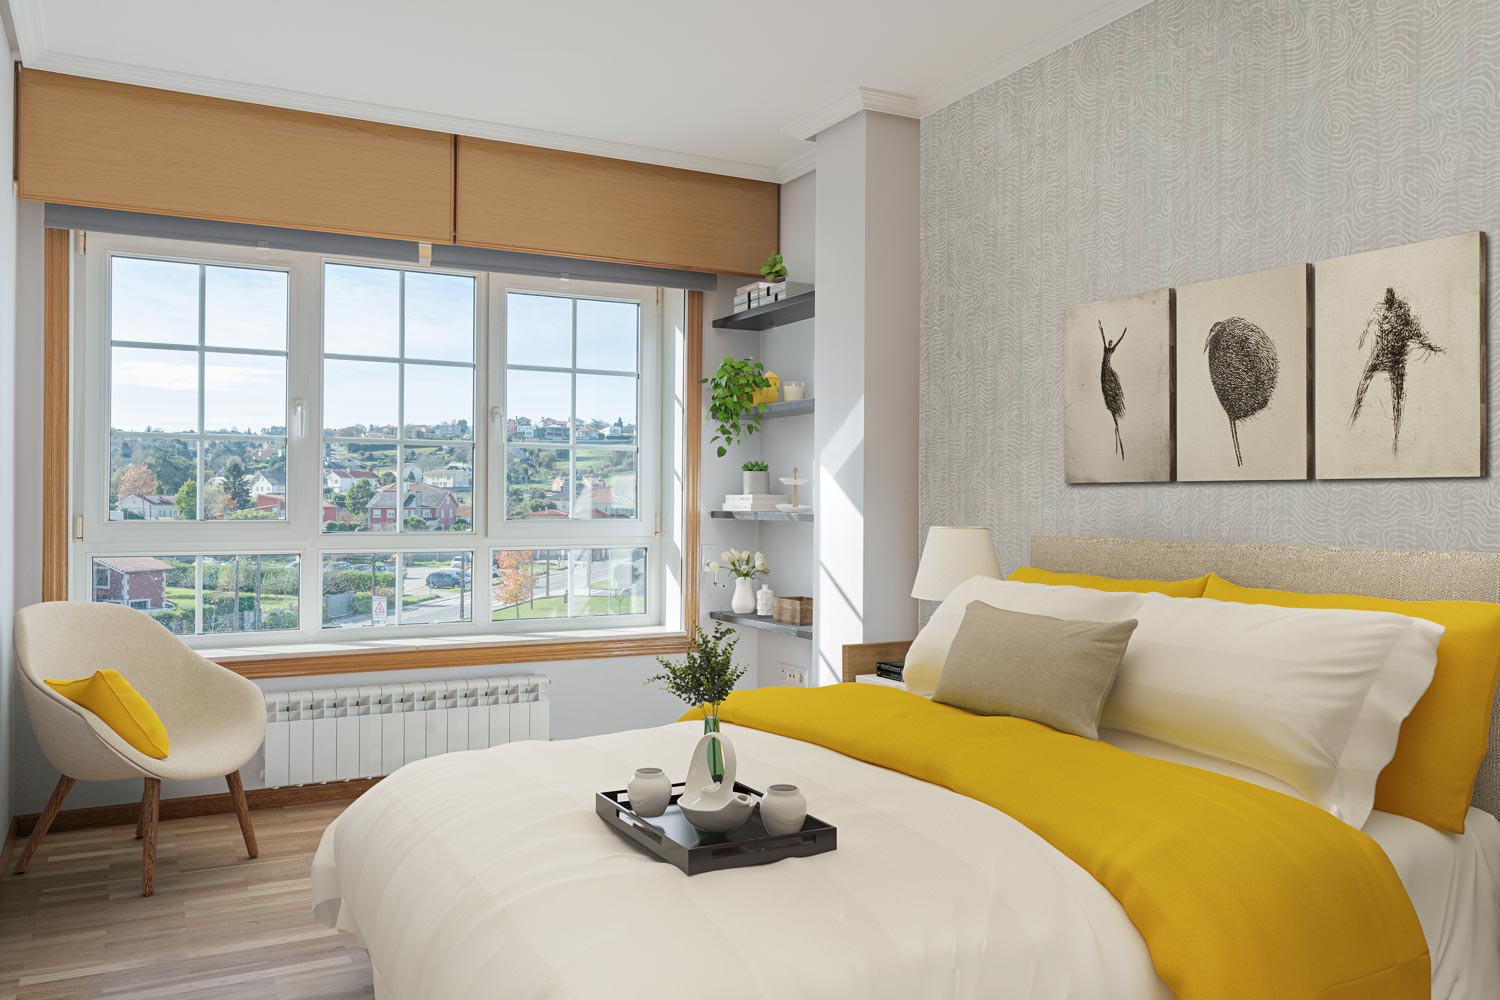 Un dormitorio moderno con grandes ventanas y vistas al exterior, con cama con ropa blanca y colcha amarilla, cuadros abstractos en la pared, y un sillón junto a la ventana, preparado con home staging